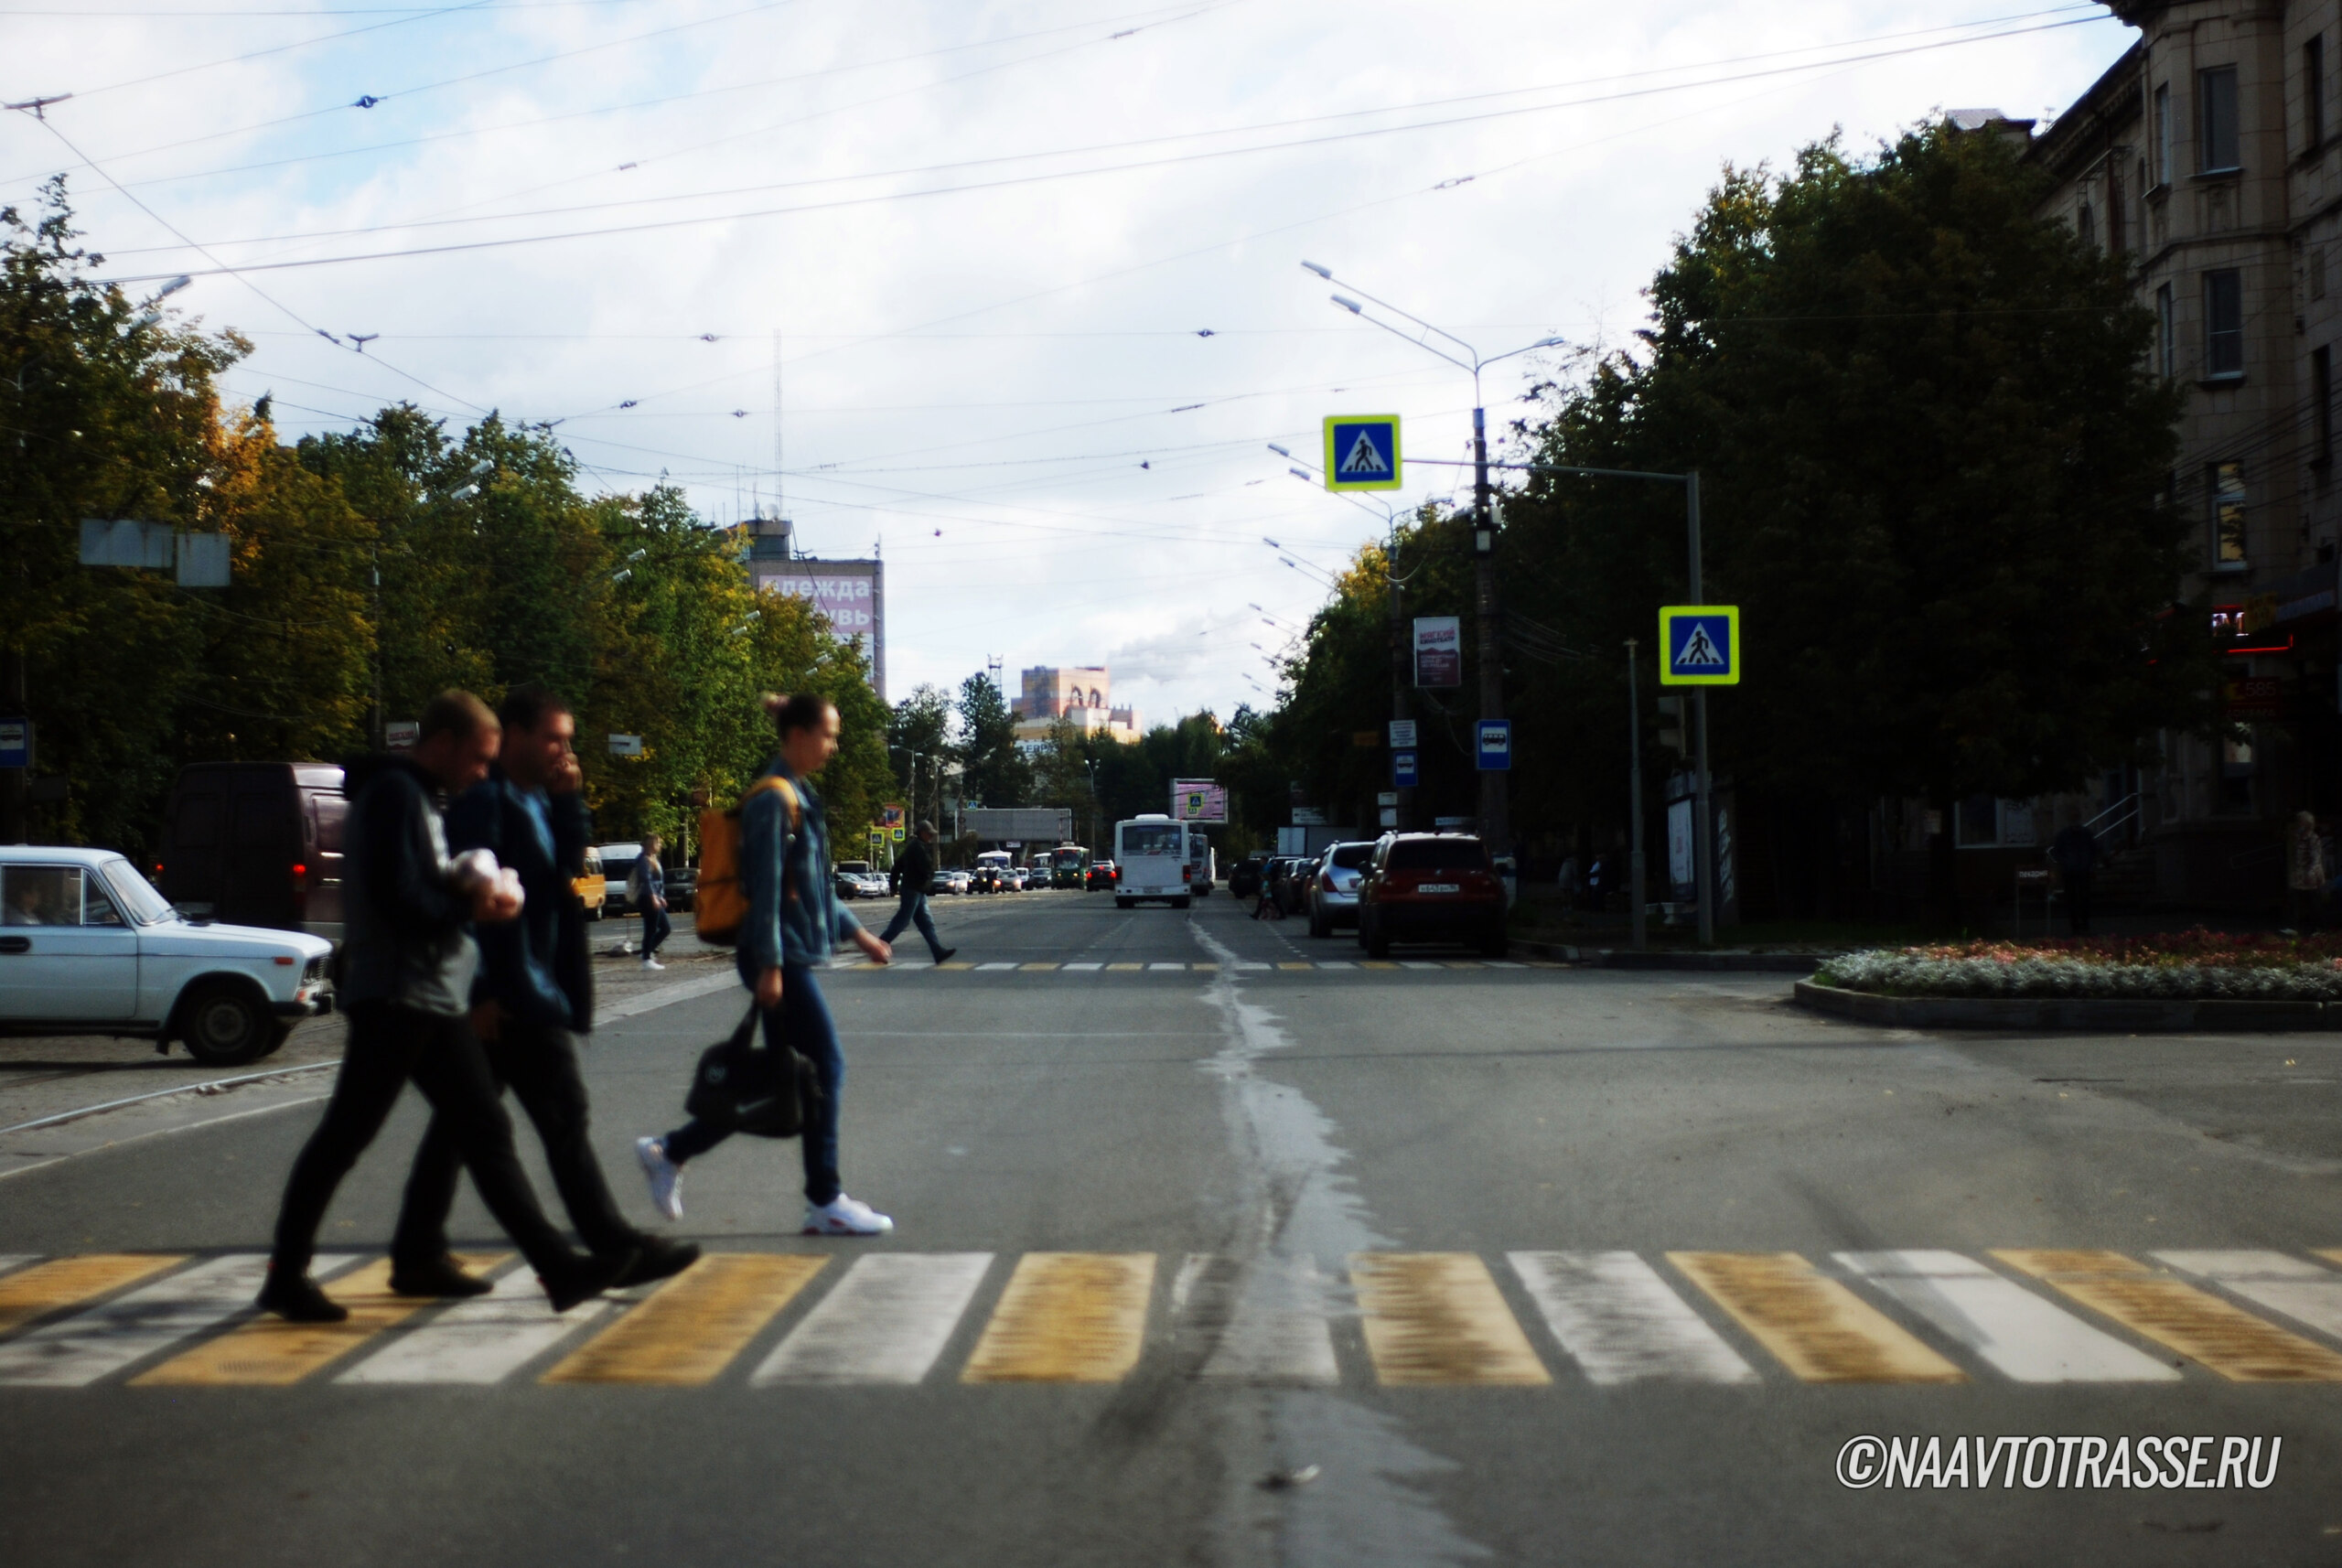 Пешеход пешеходный переход. Штраф пешеходный переход. Дорожное движение для пешеходов. Пешеходный переход 2021.